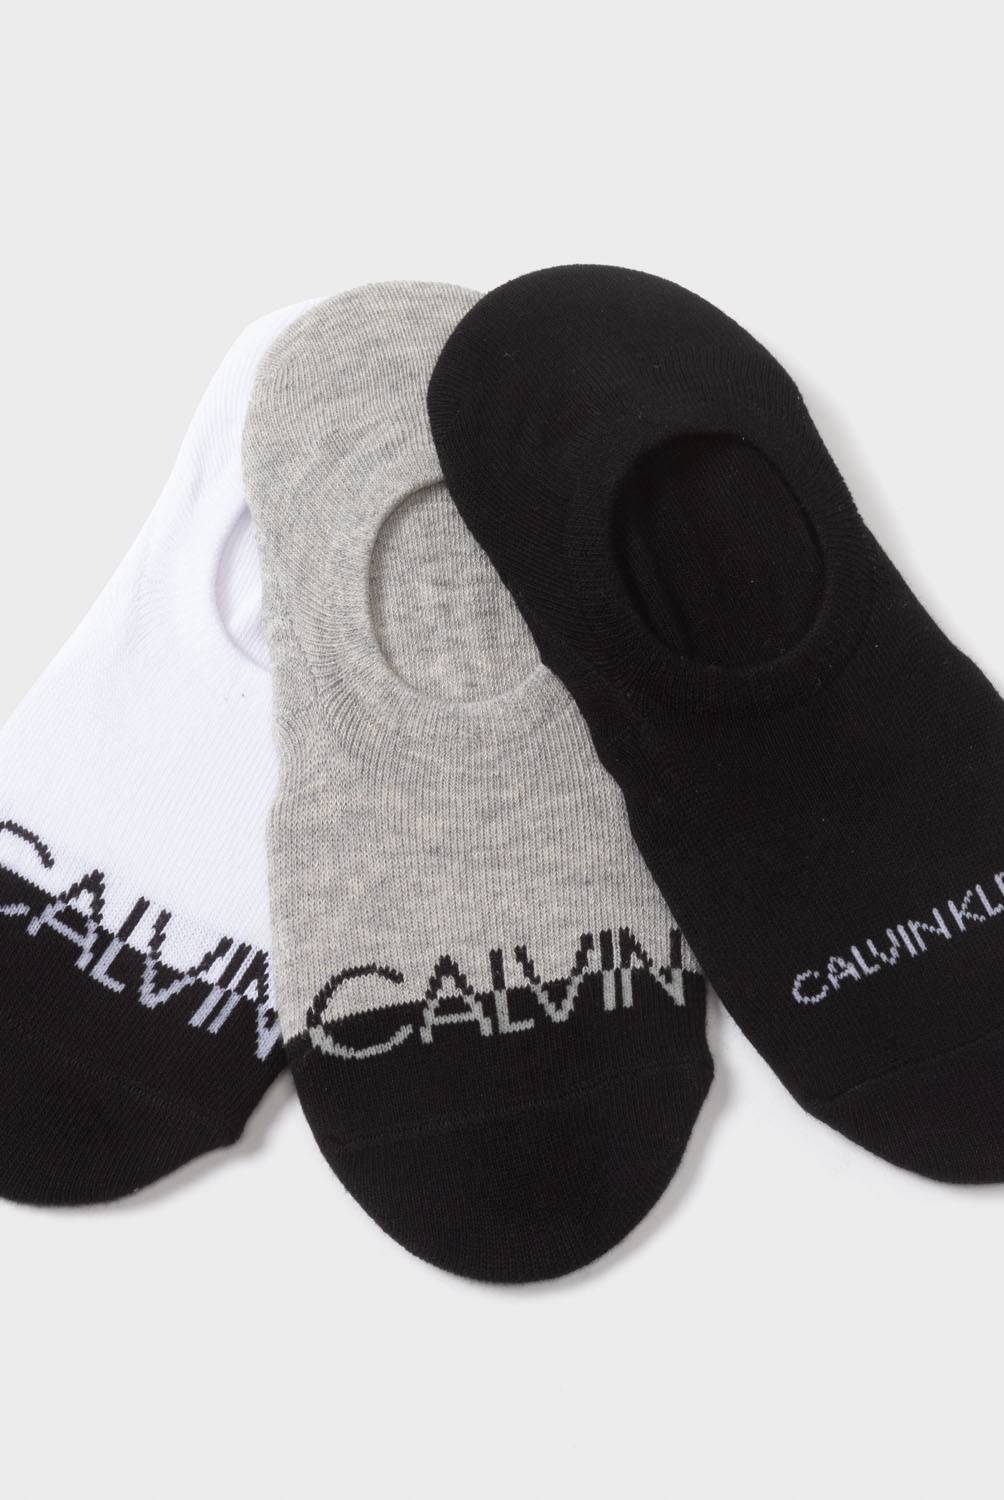 CALVIN KLEIN - Calvin Klein Pack de 3 Calcetín Casual Mujer